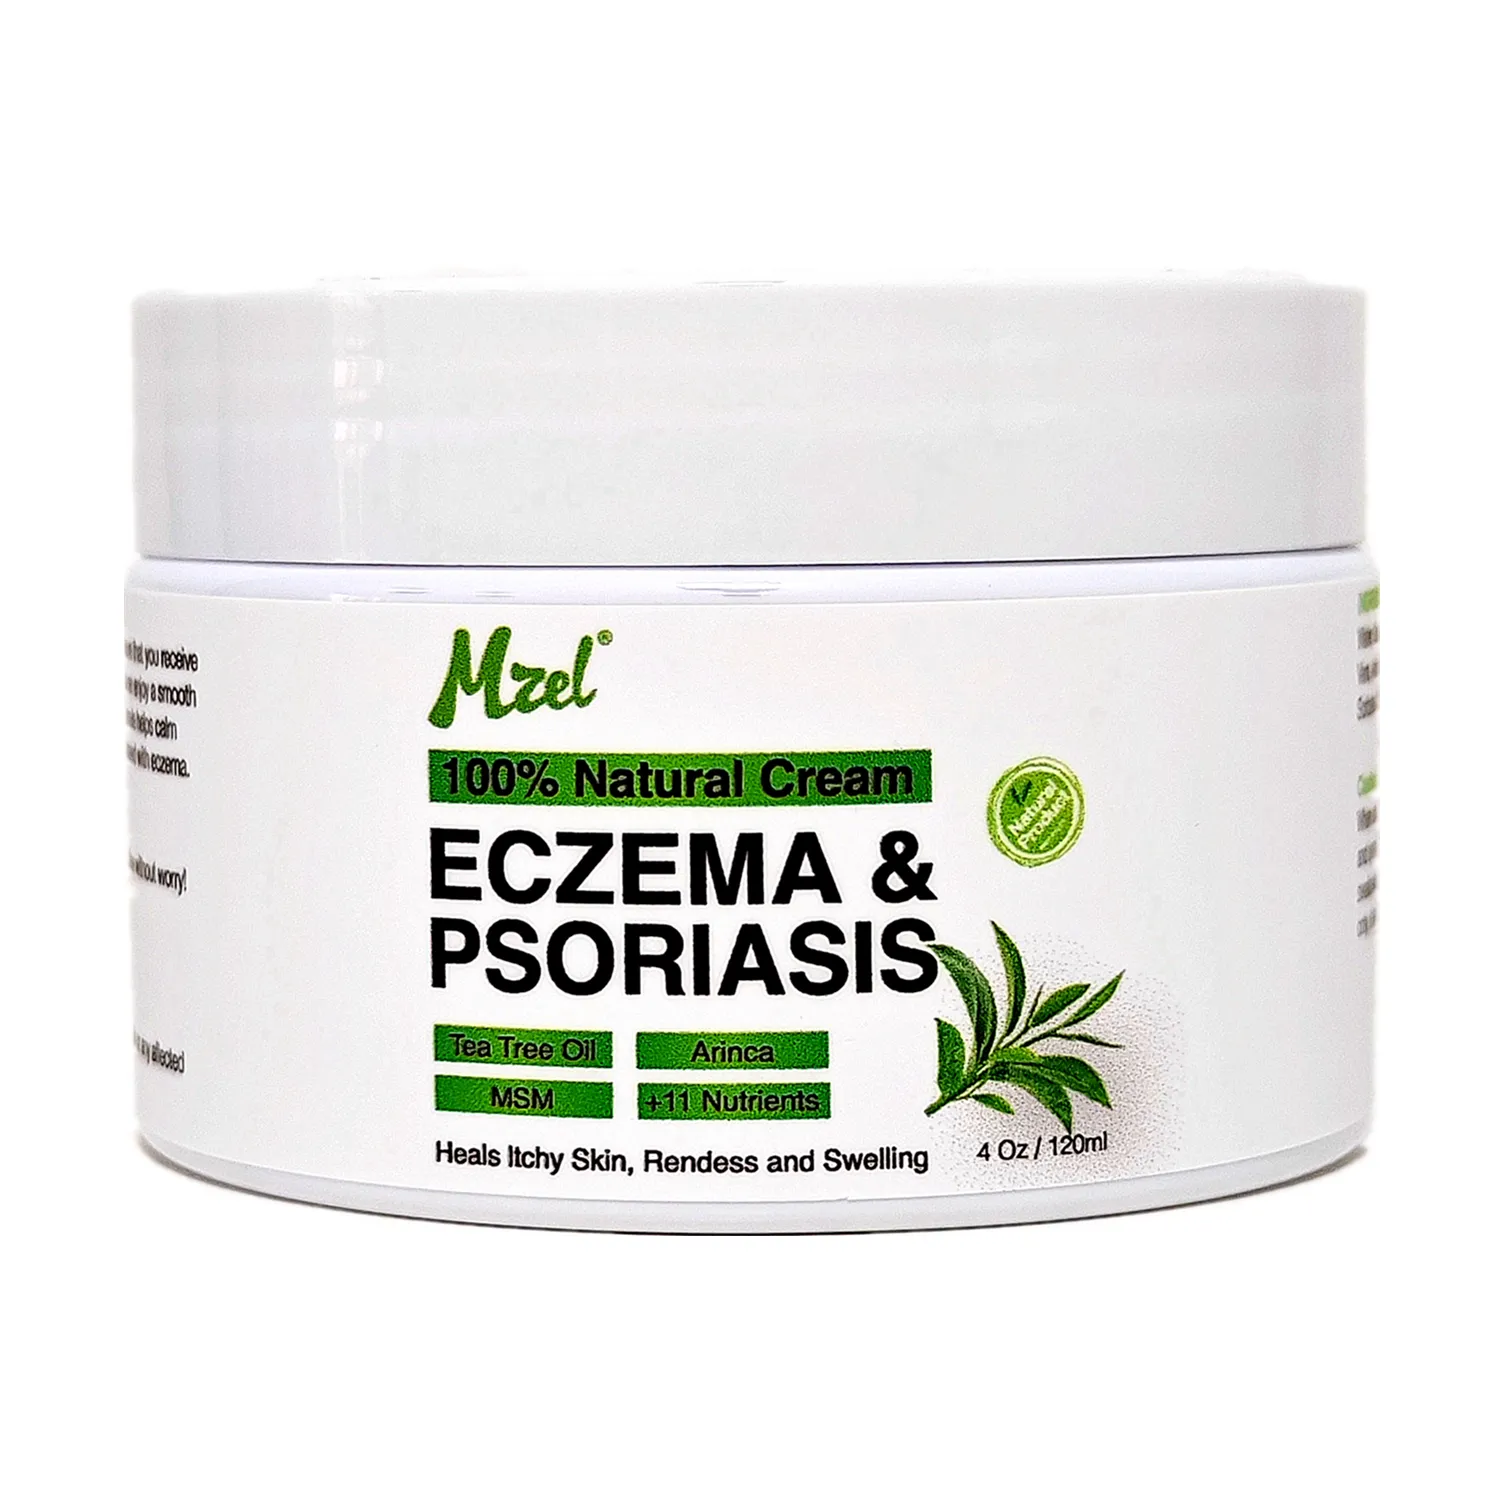 Natürliche Creme zur Behandlung von intensiven Ekzemen und Psoriasis hilft, Hautrei zungen zu lindern und zu lindern